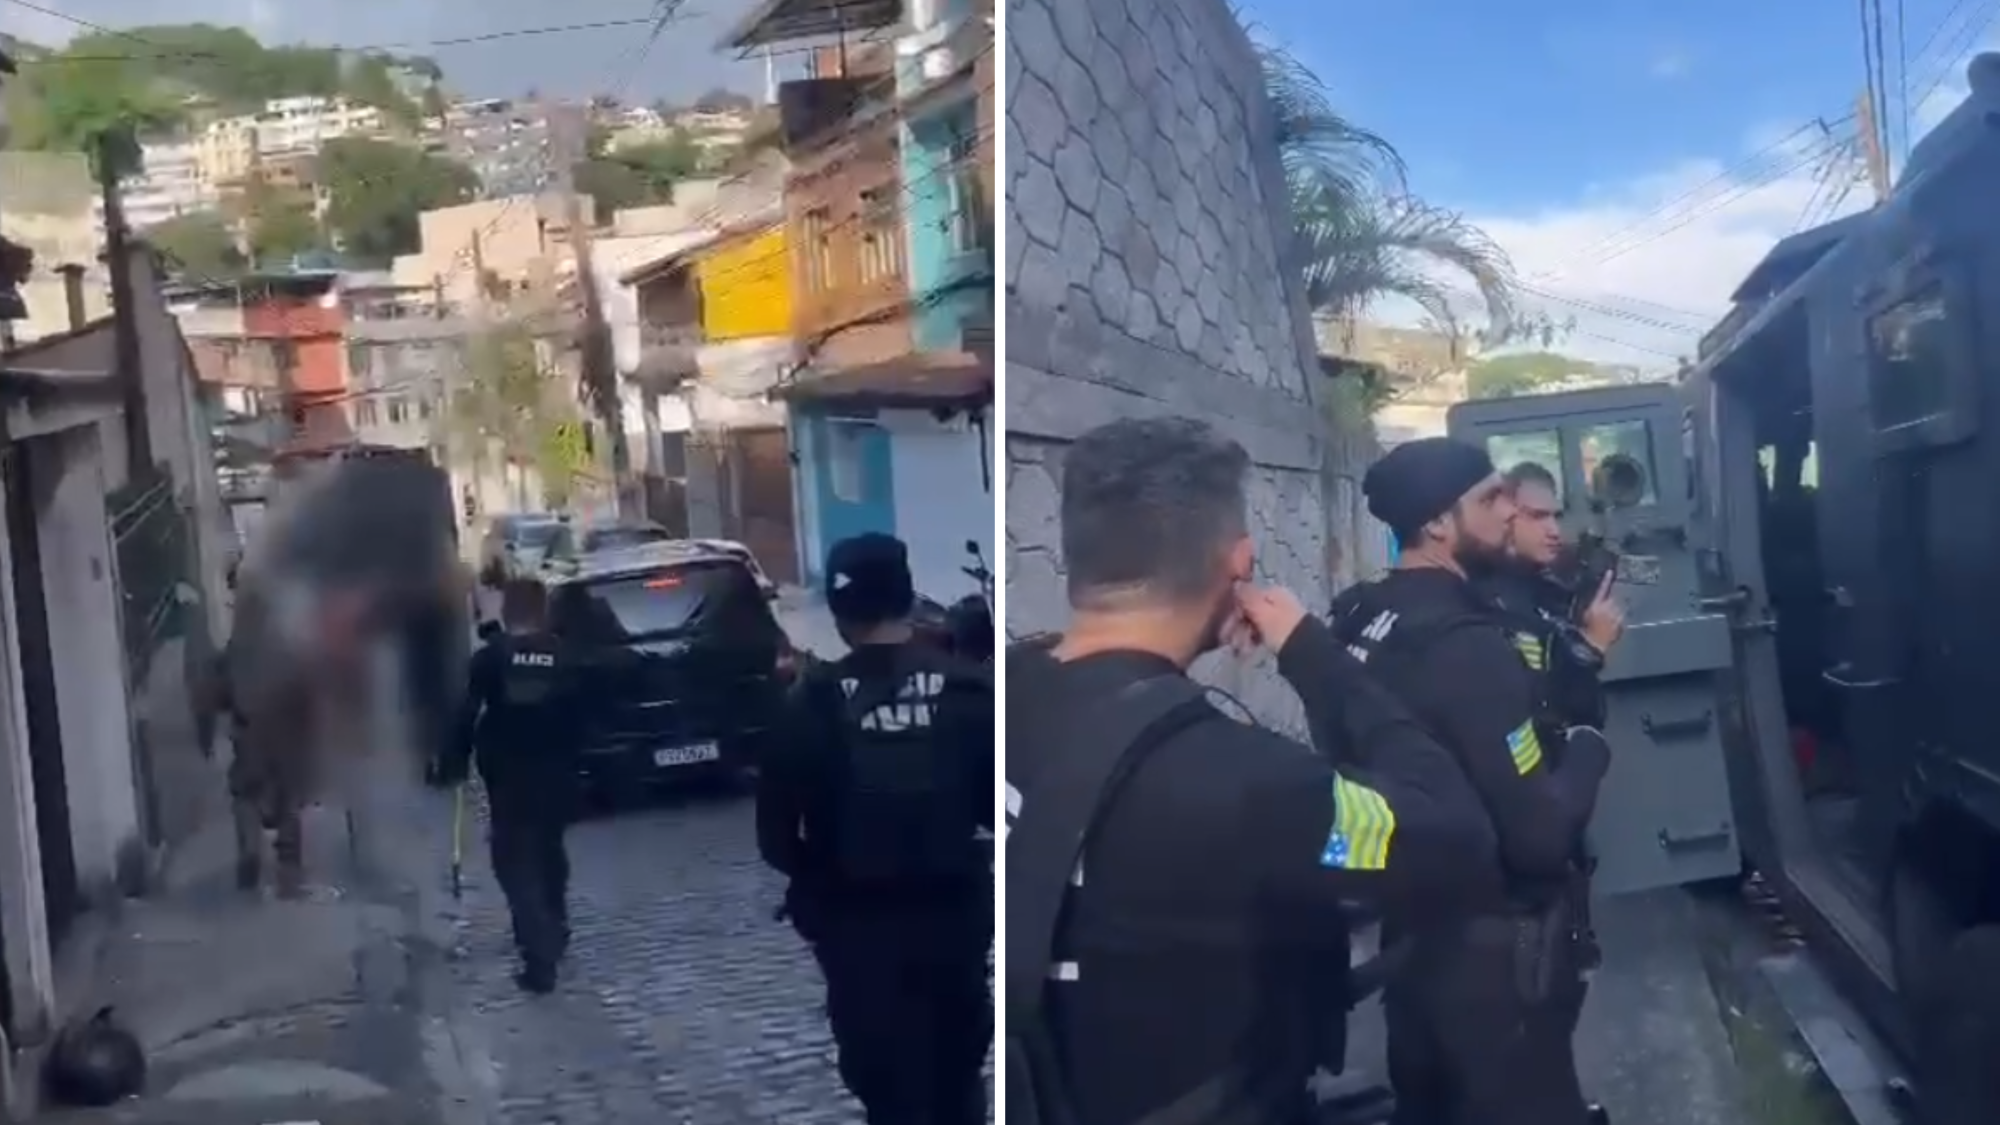 Grupo foragido de Goiás é investigado no Rio de Janeiro; três morreram em confronto com a Polícia